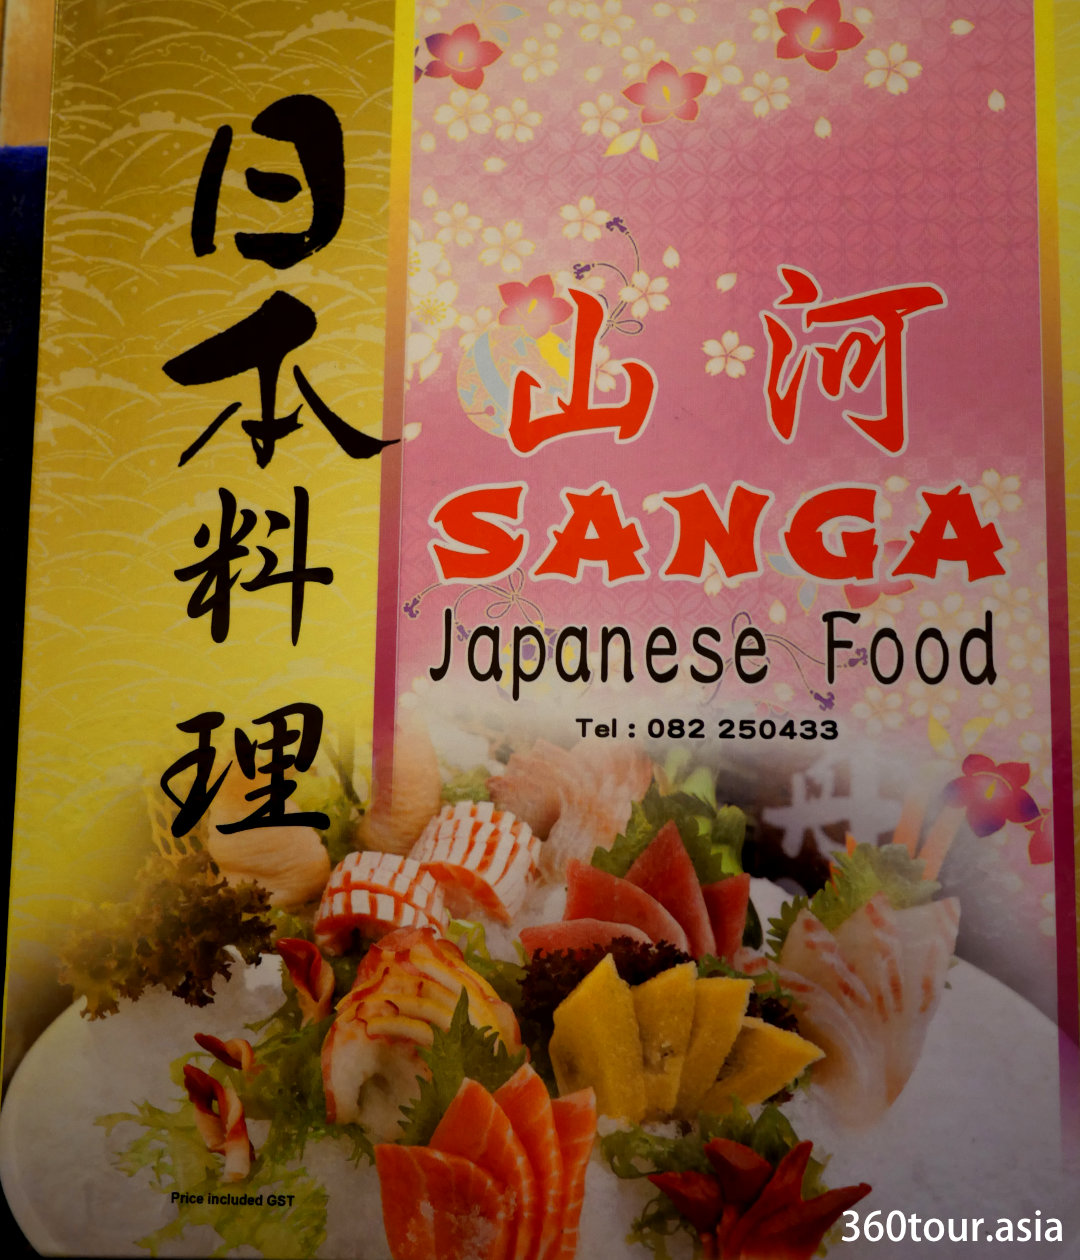 Sanga japanese food